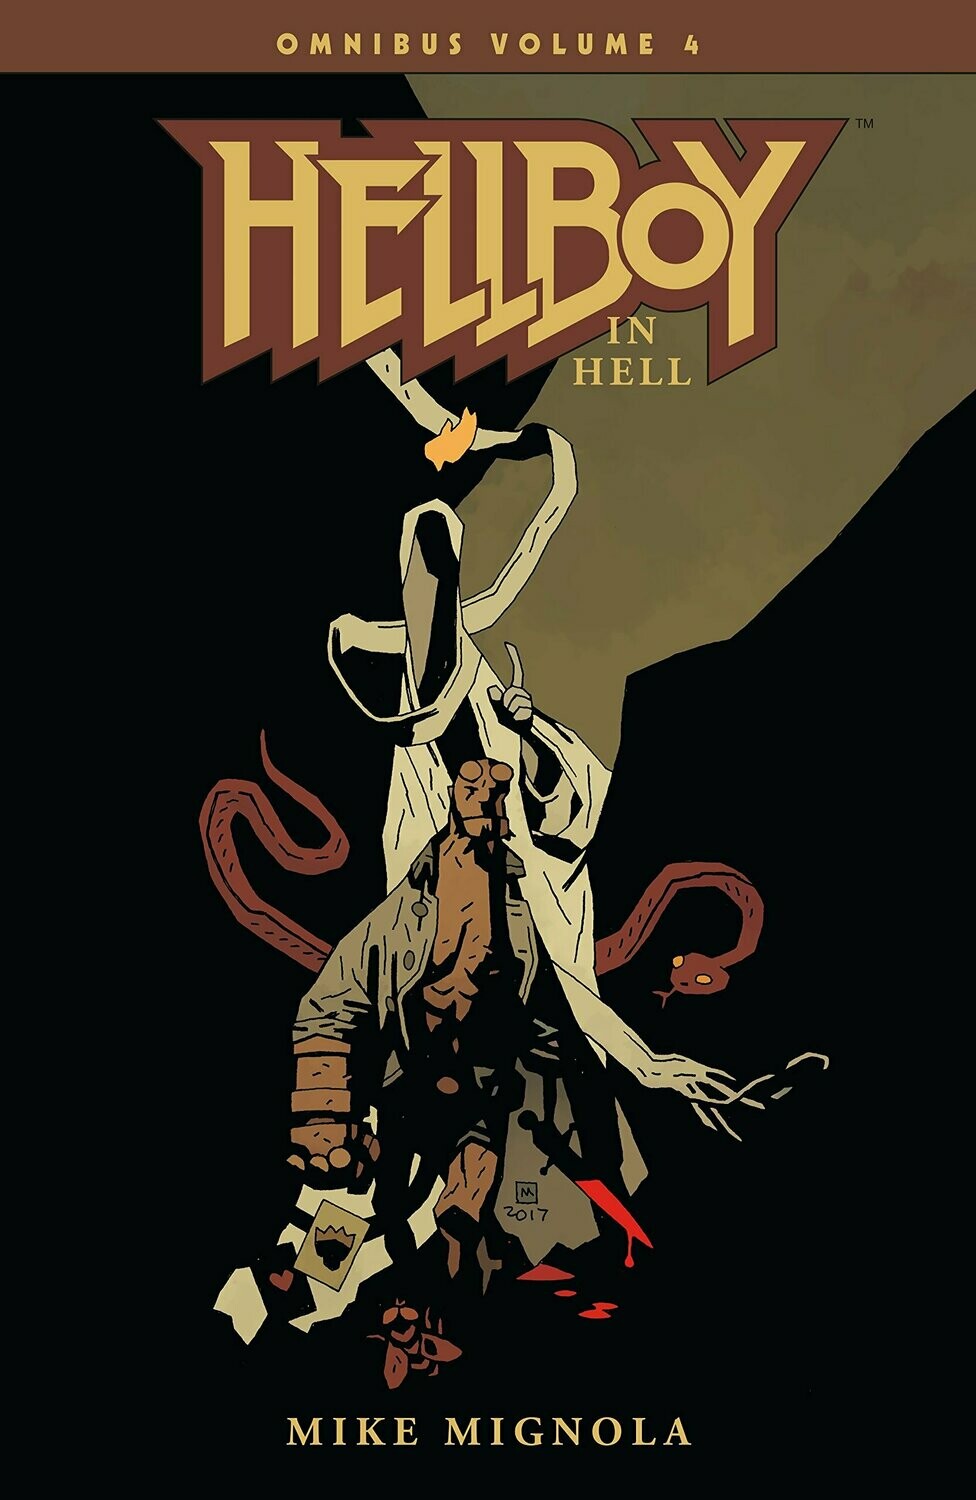 Mignola: Hellboy in Hell complete